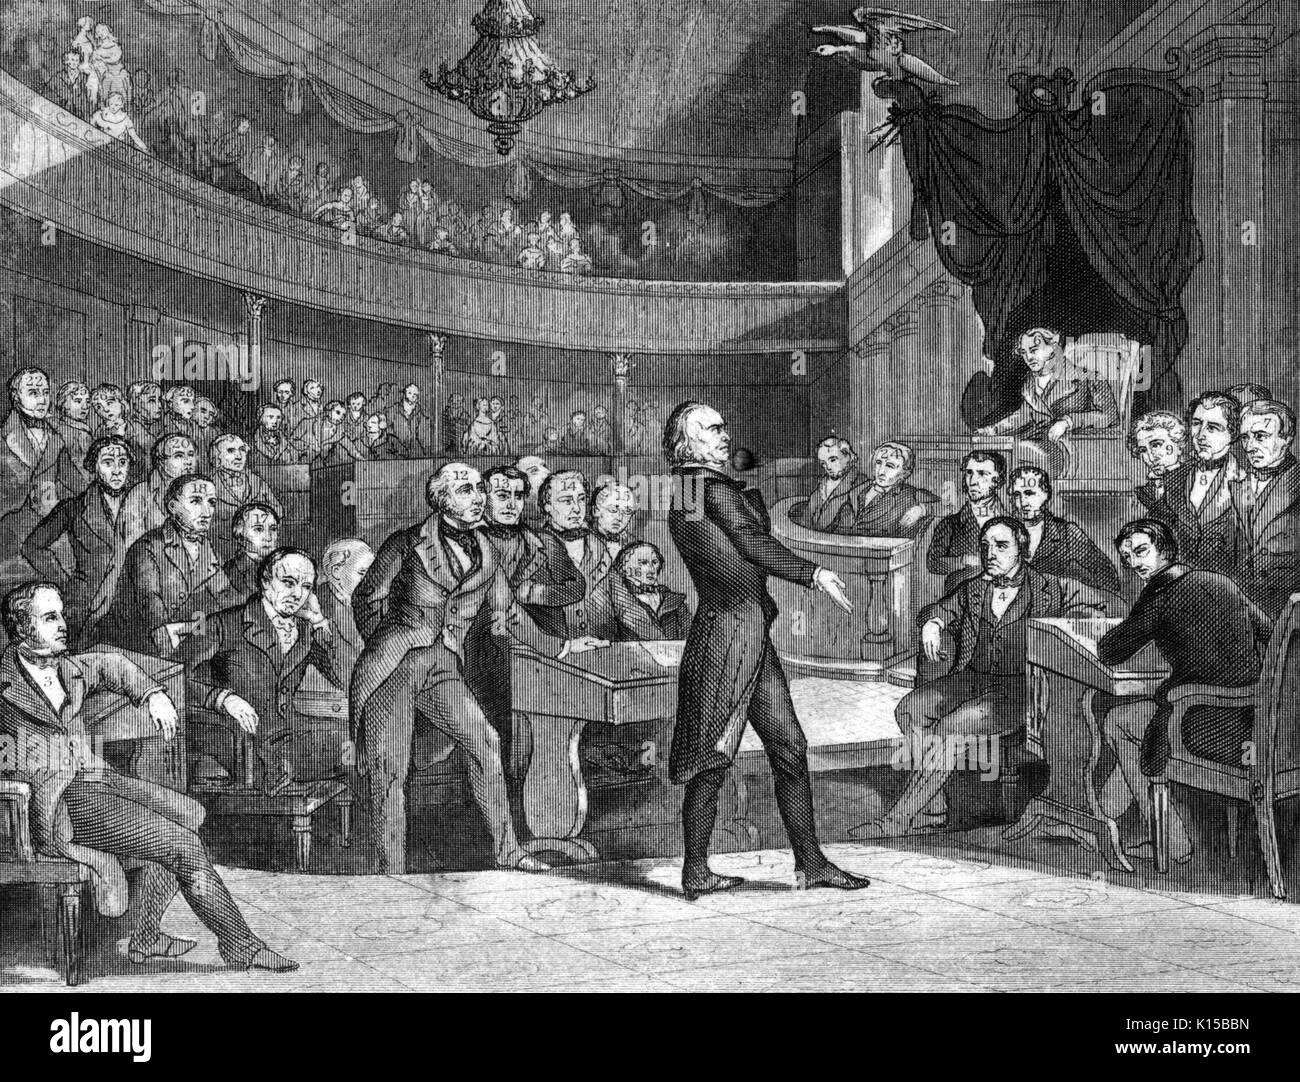 Henry Clay, avvocato e oratore, offrendo un discorso, 1840. Dalla Biblioteca Pubblica di New York. Foto Stock